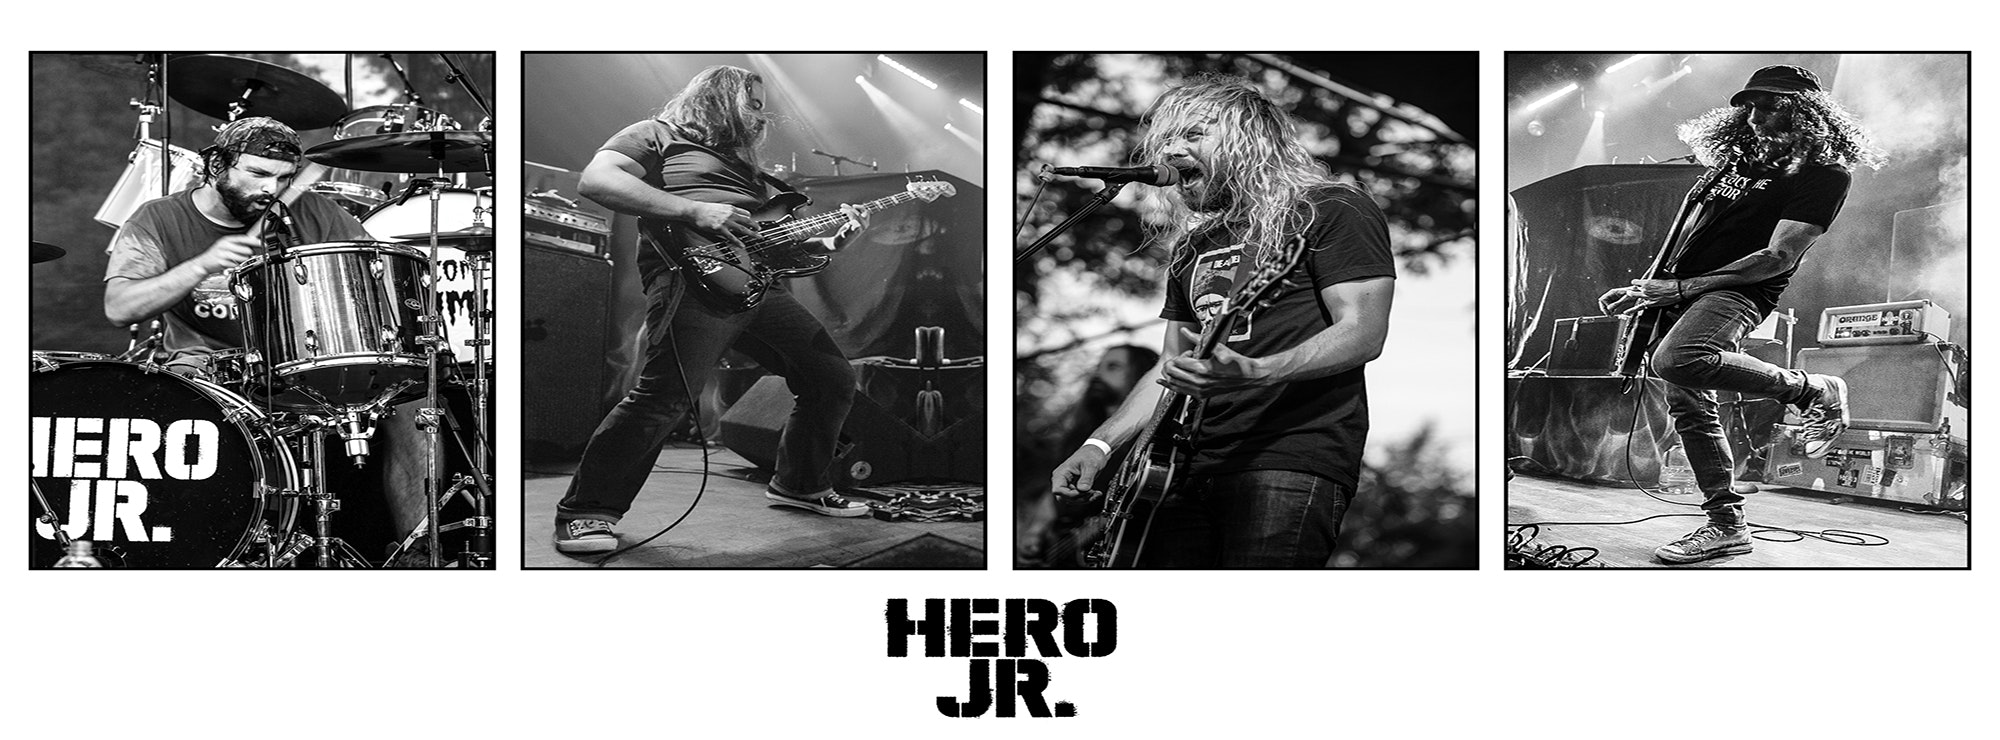 Hero Jr band members